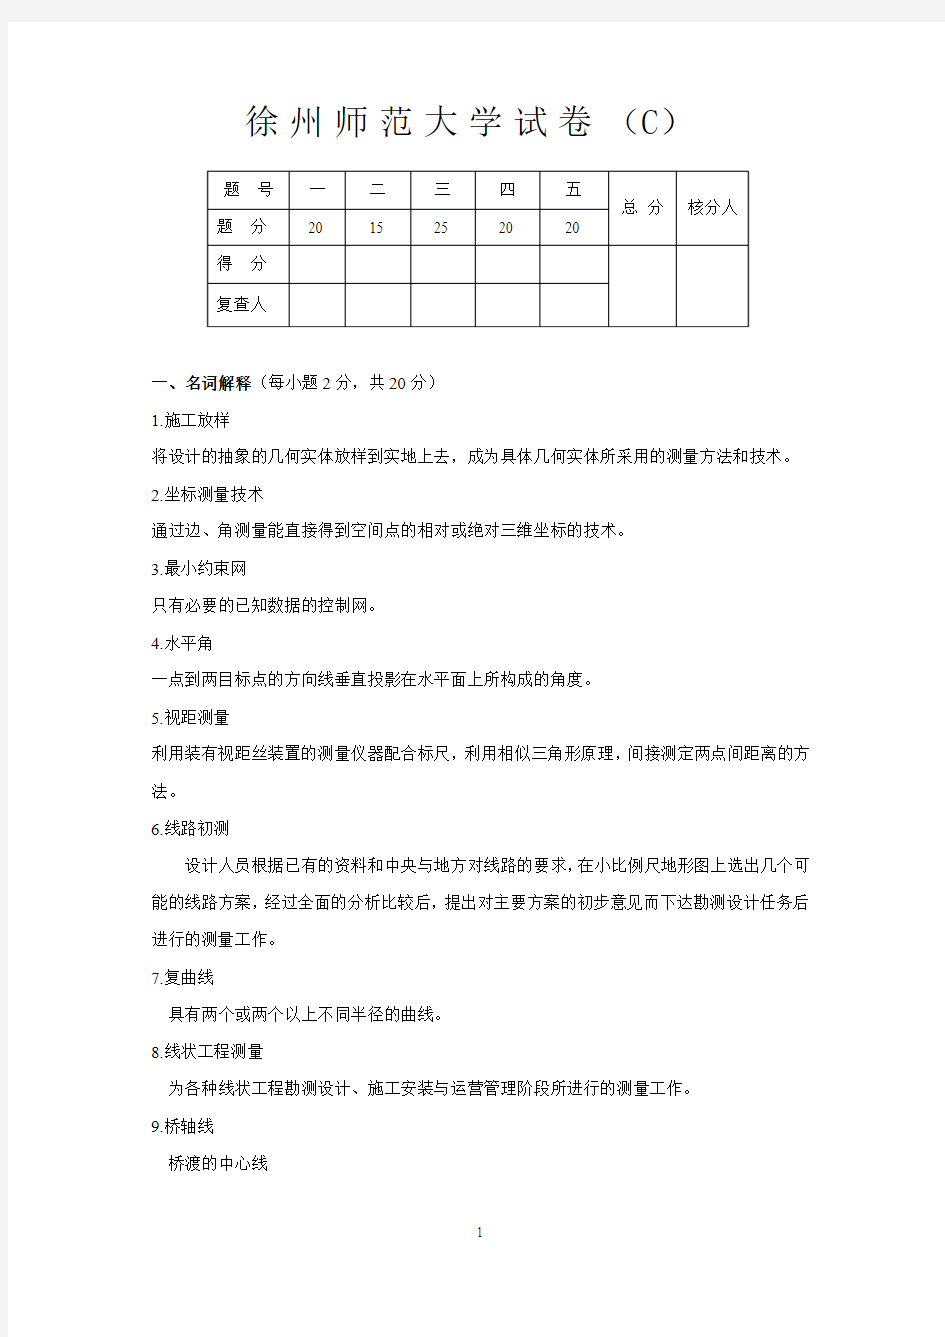 工程测量考题第3套(答案)   中国矿业大学工程测量考试试卷   复习资料